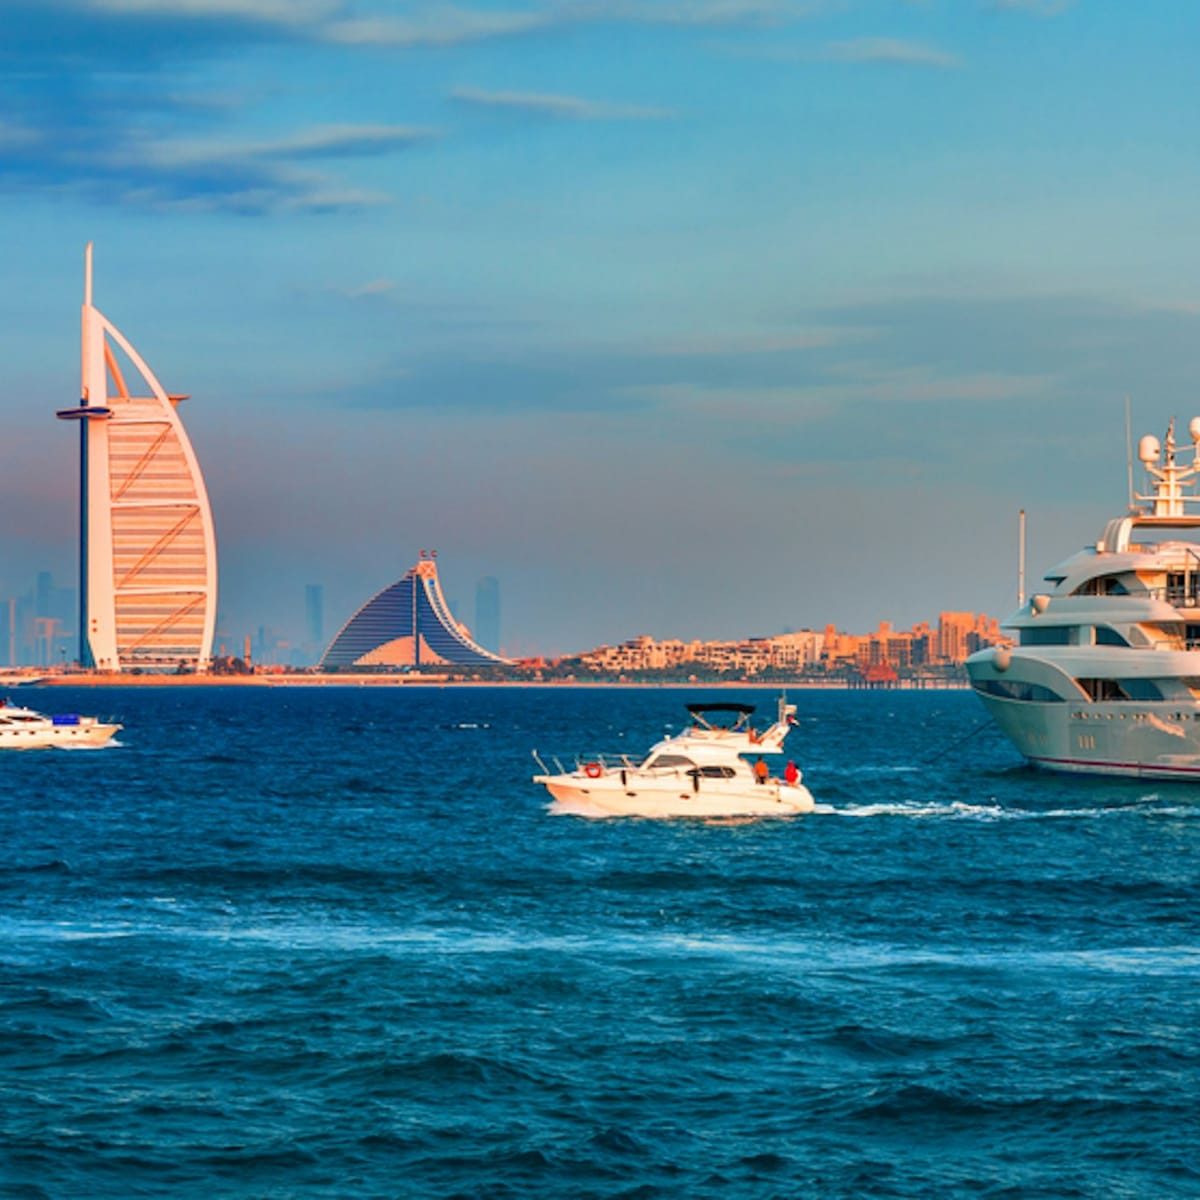 the-yellow-boats-99-min-premium-boat-tour-palm-burj-al-arab-dubai-marina_1